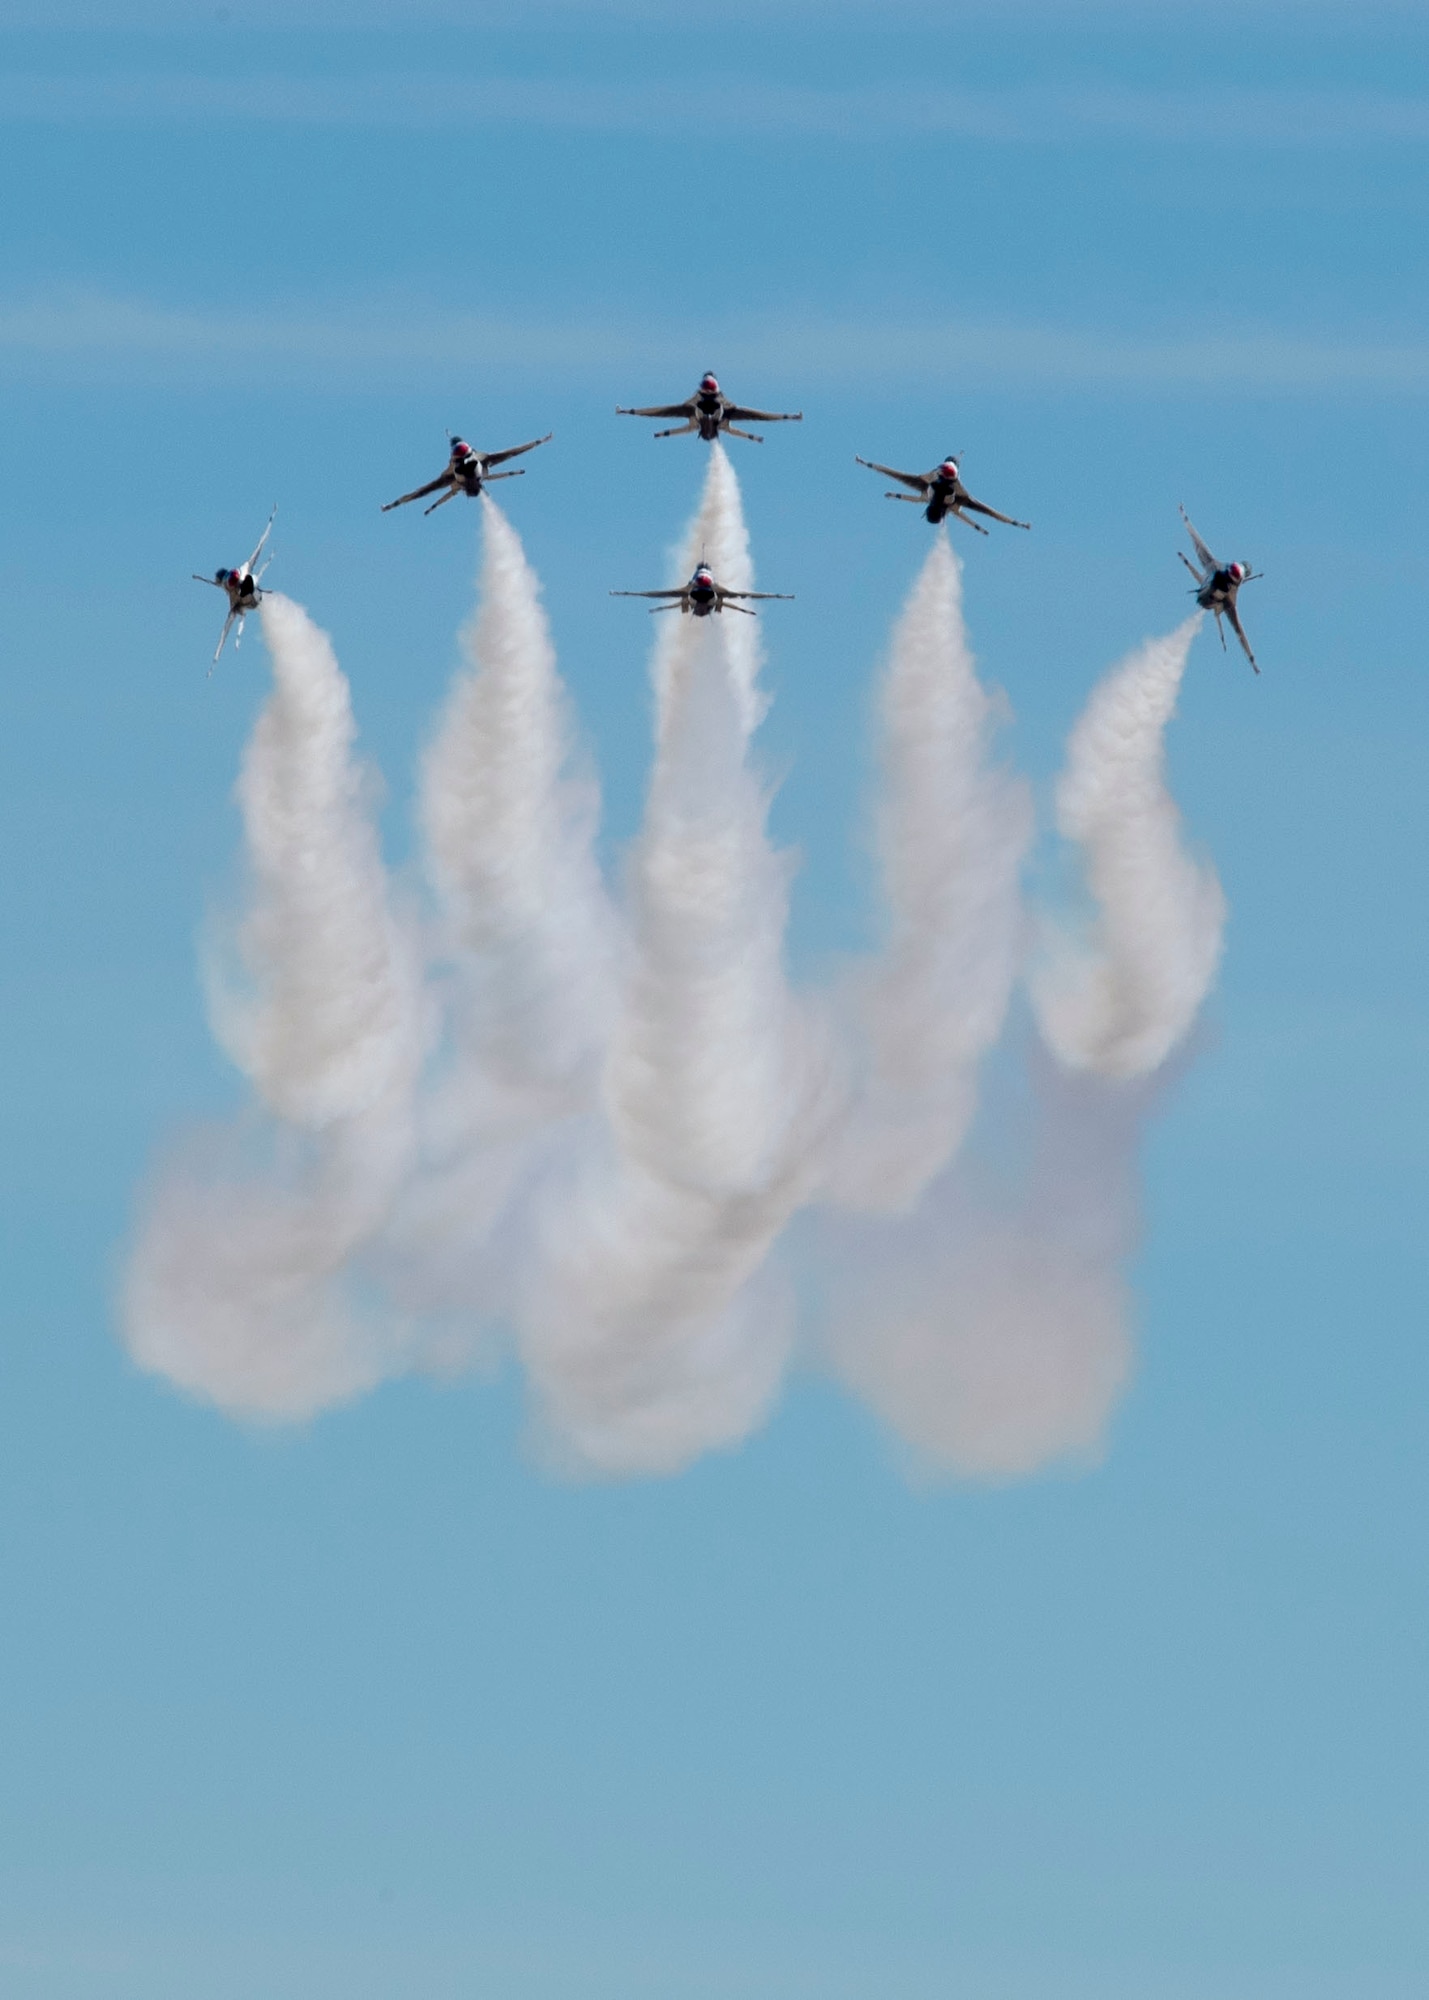 Thunderbirds perform a delta burst